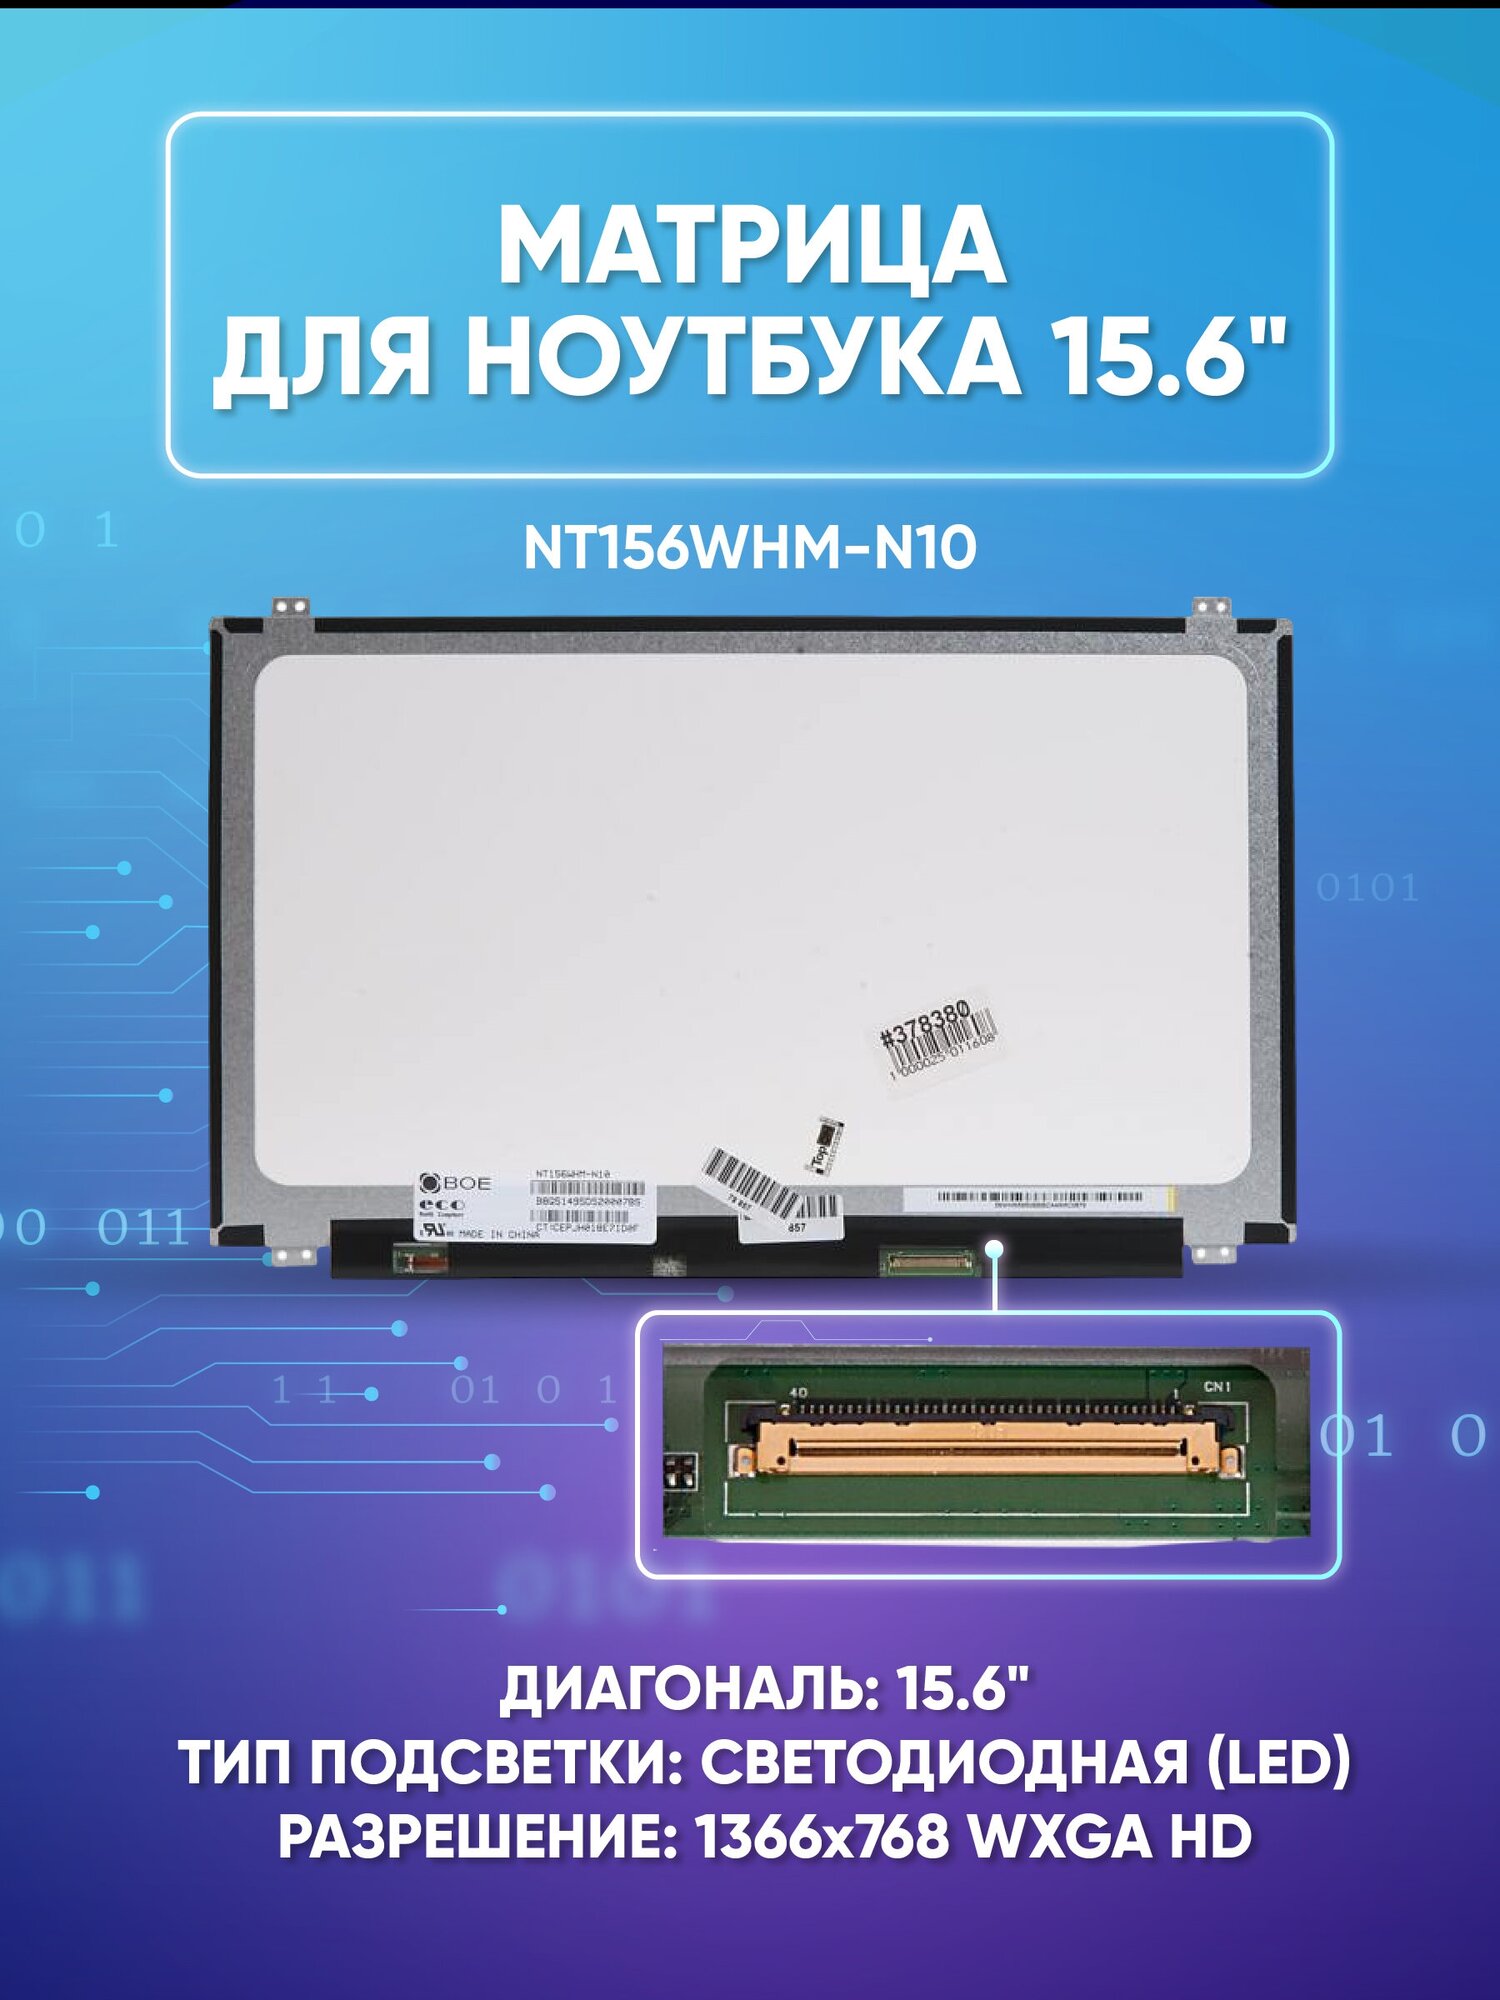 Матрица 15.6 Glare NT156WHM-N10, WXGA HD 1366x768, 40L, cветодиодная (LED), Chi Mei, уши В/Н, NT156WHM-N10